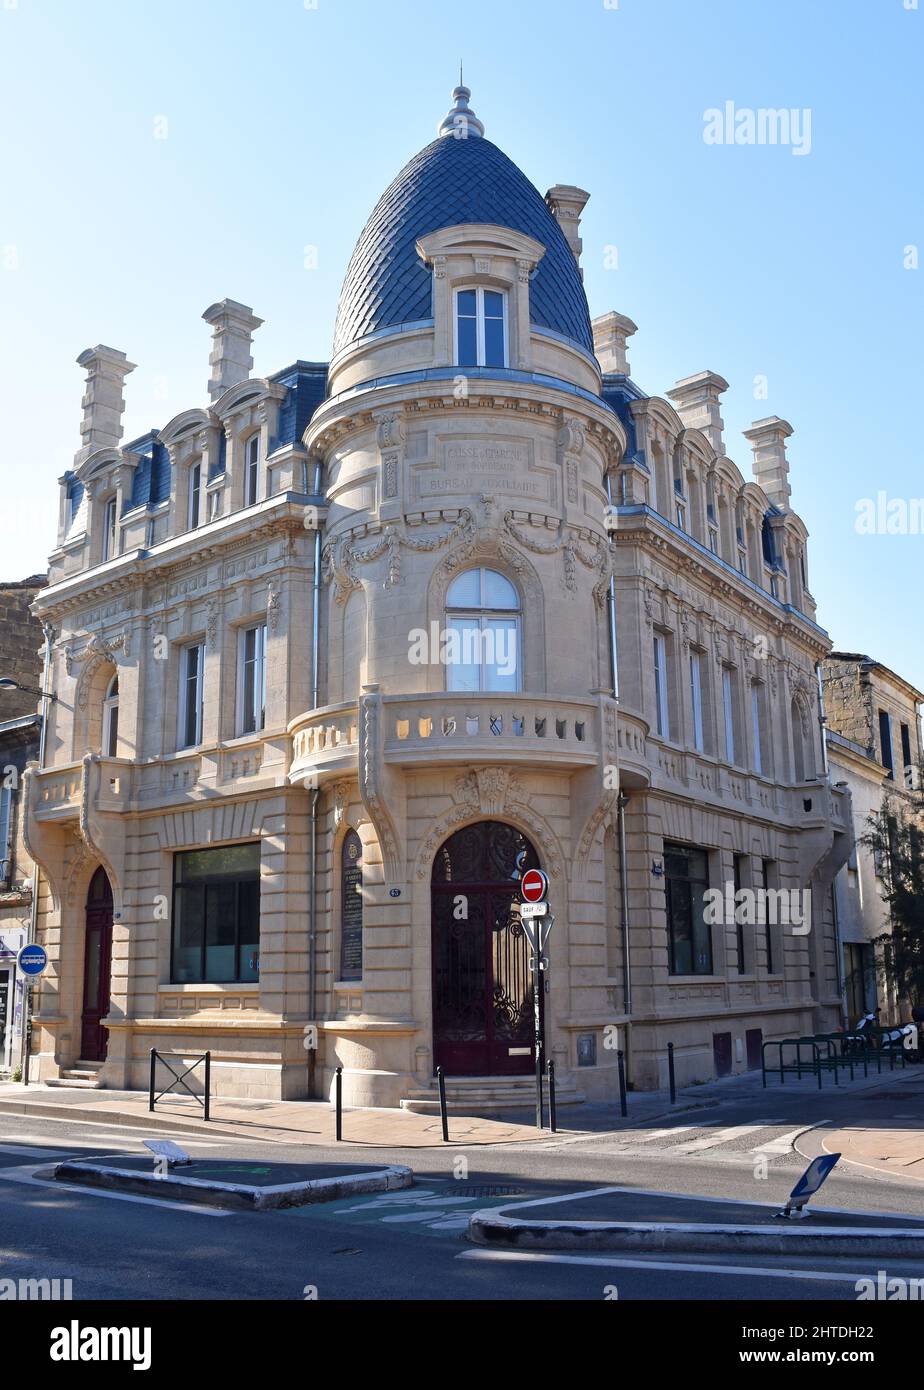 Un banco de ahorros, Caisse d’Epargne de Bordeaux, elegante edificio de finales de 19th C, con muchas obras decorativas en un estilo barroco neoclásico Foto de stock